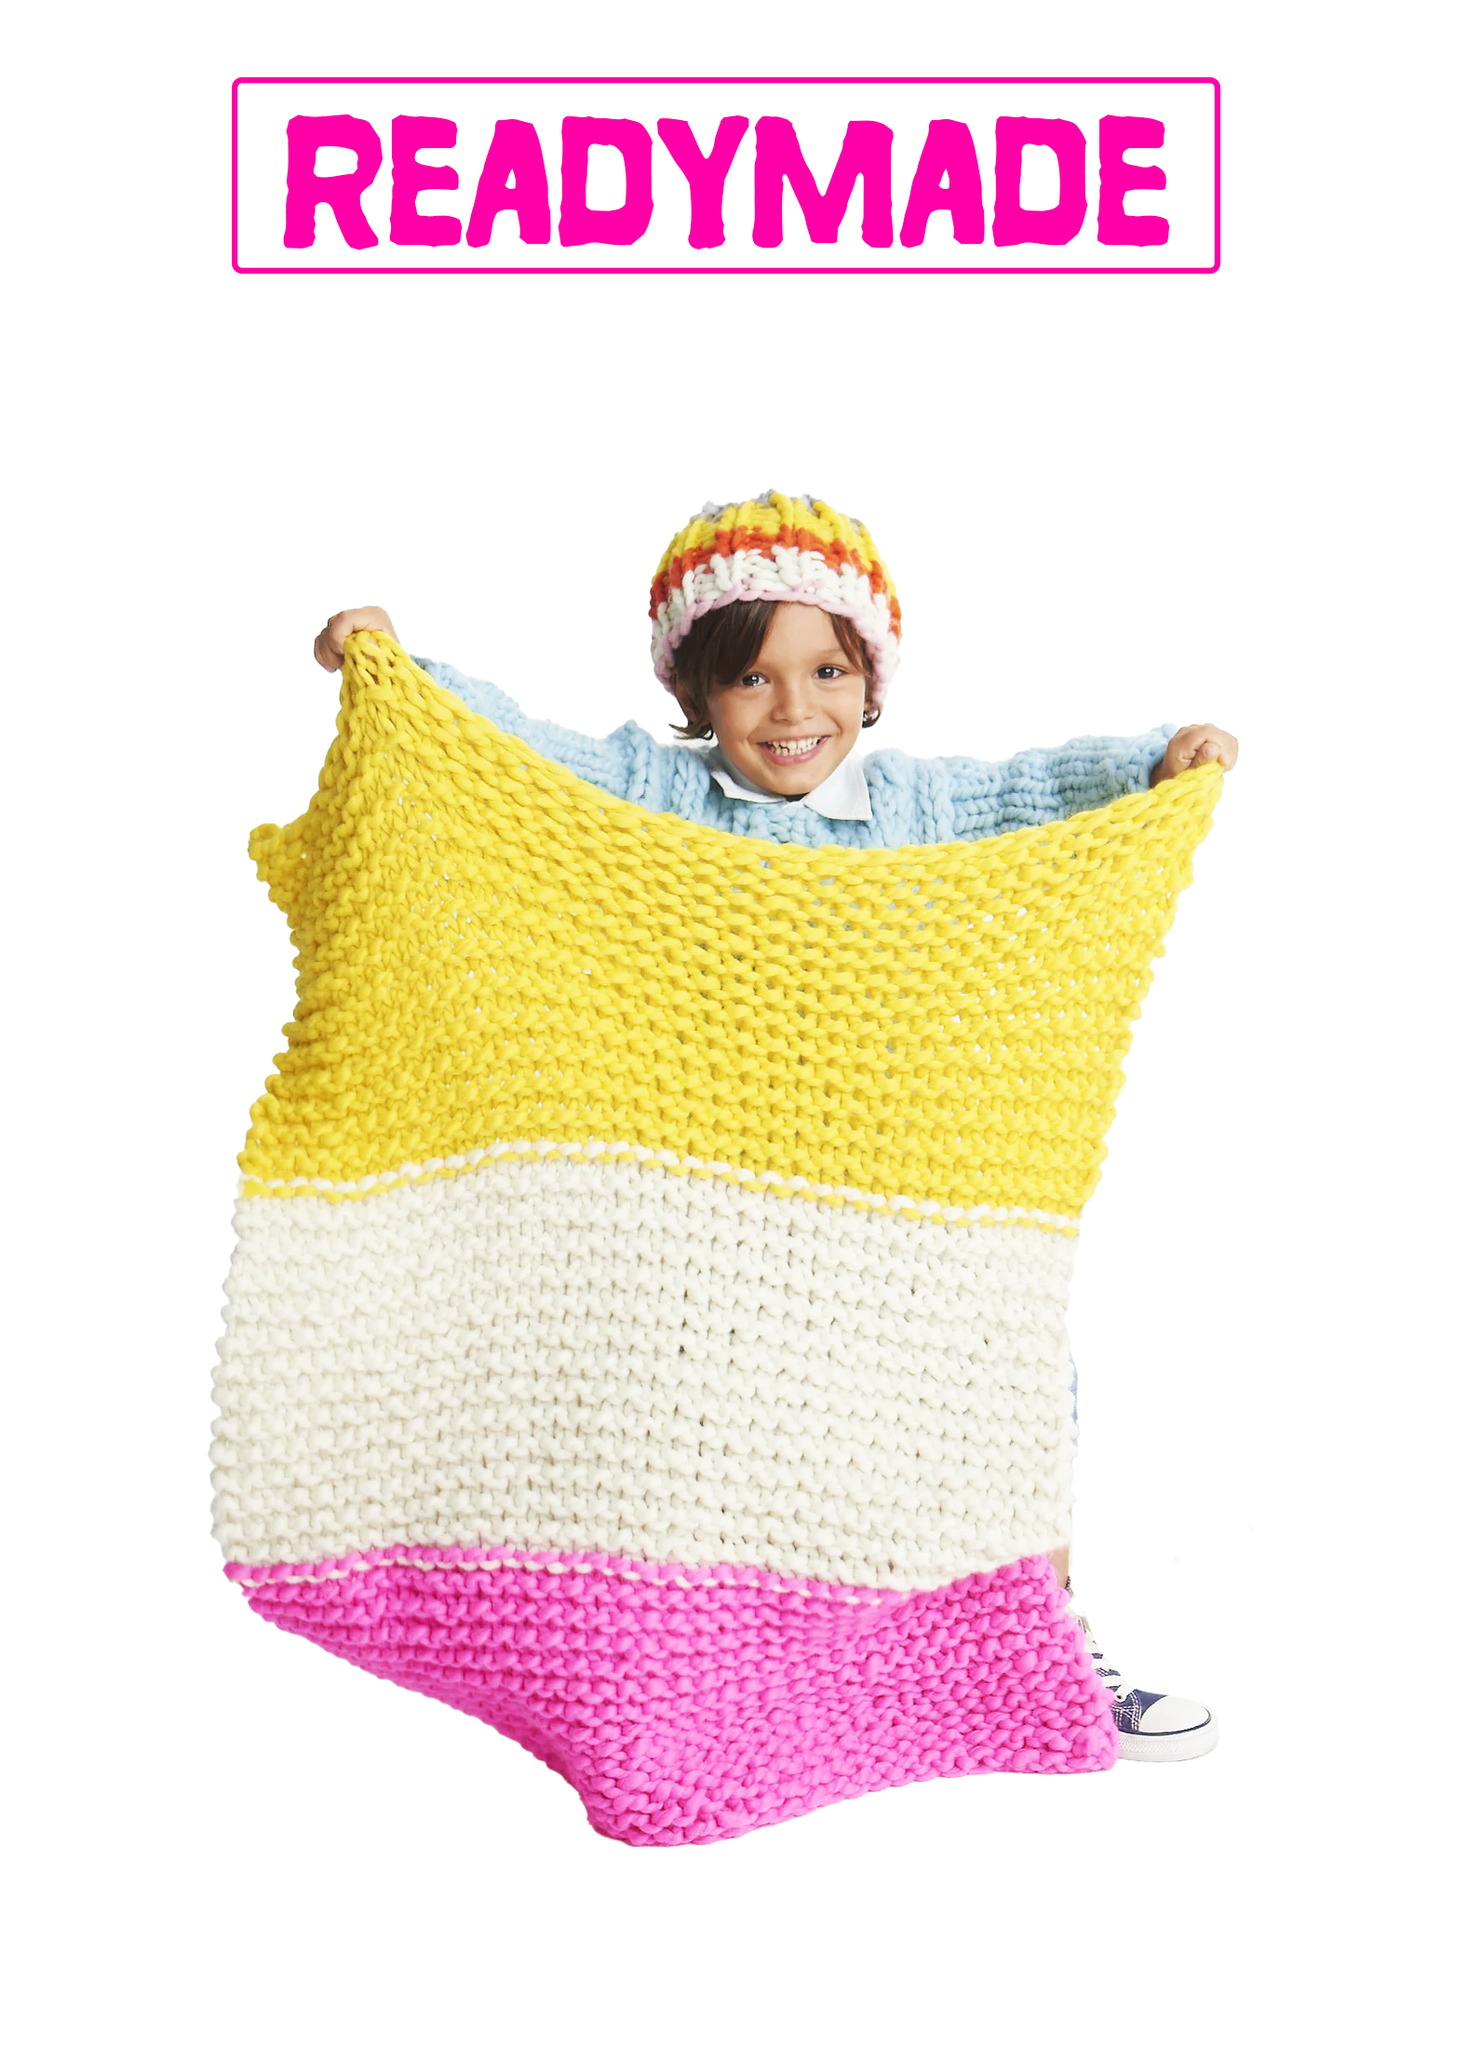 Little One's Blanket - Merino